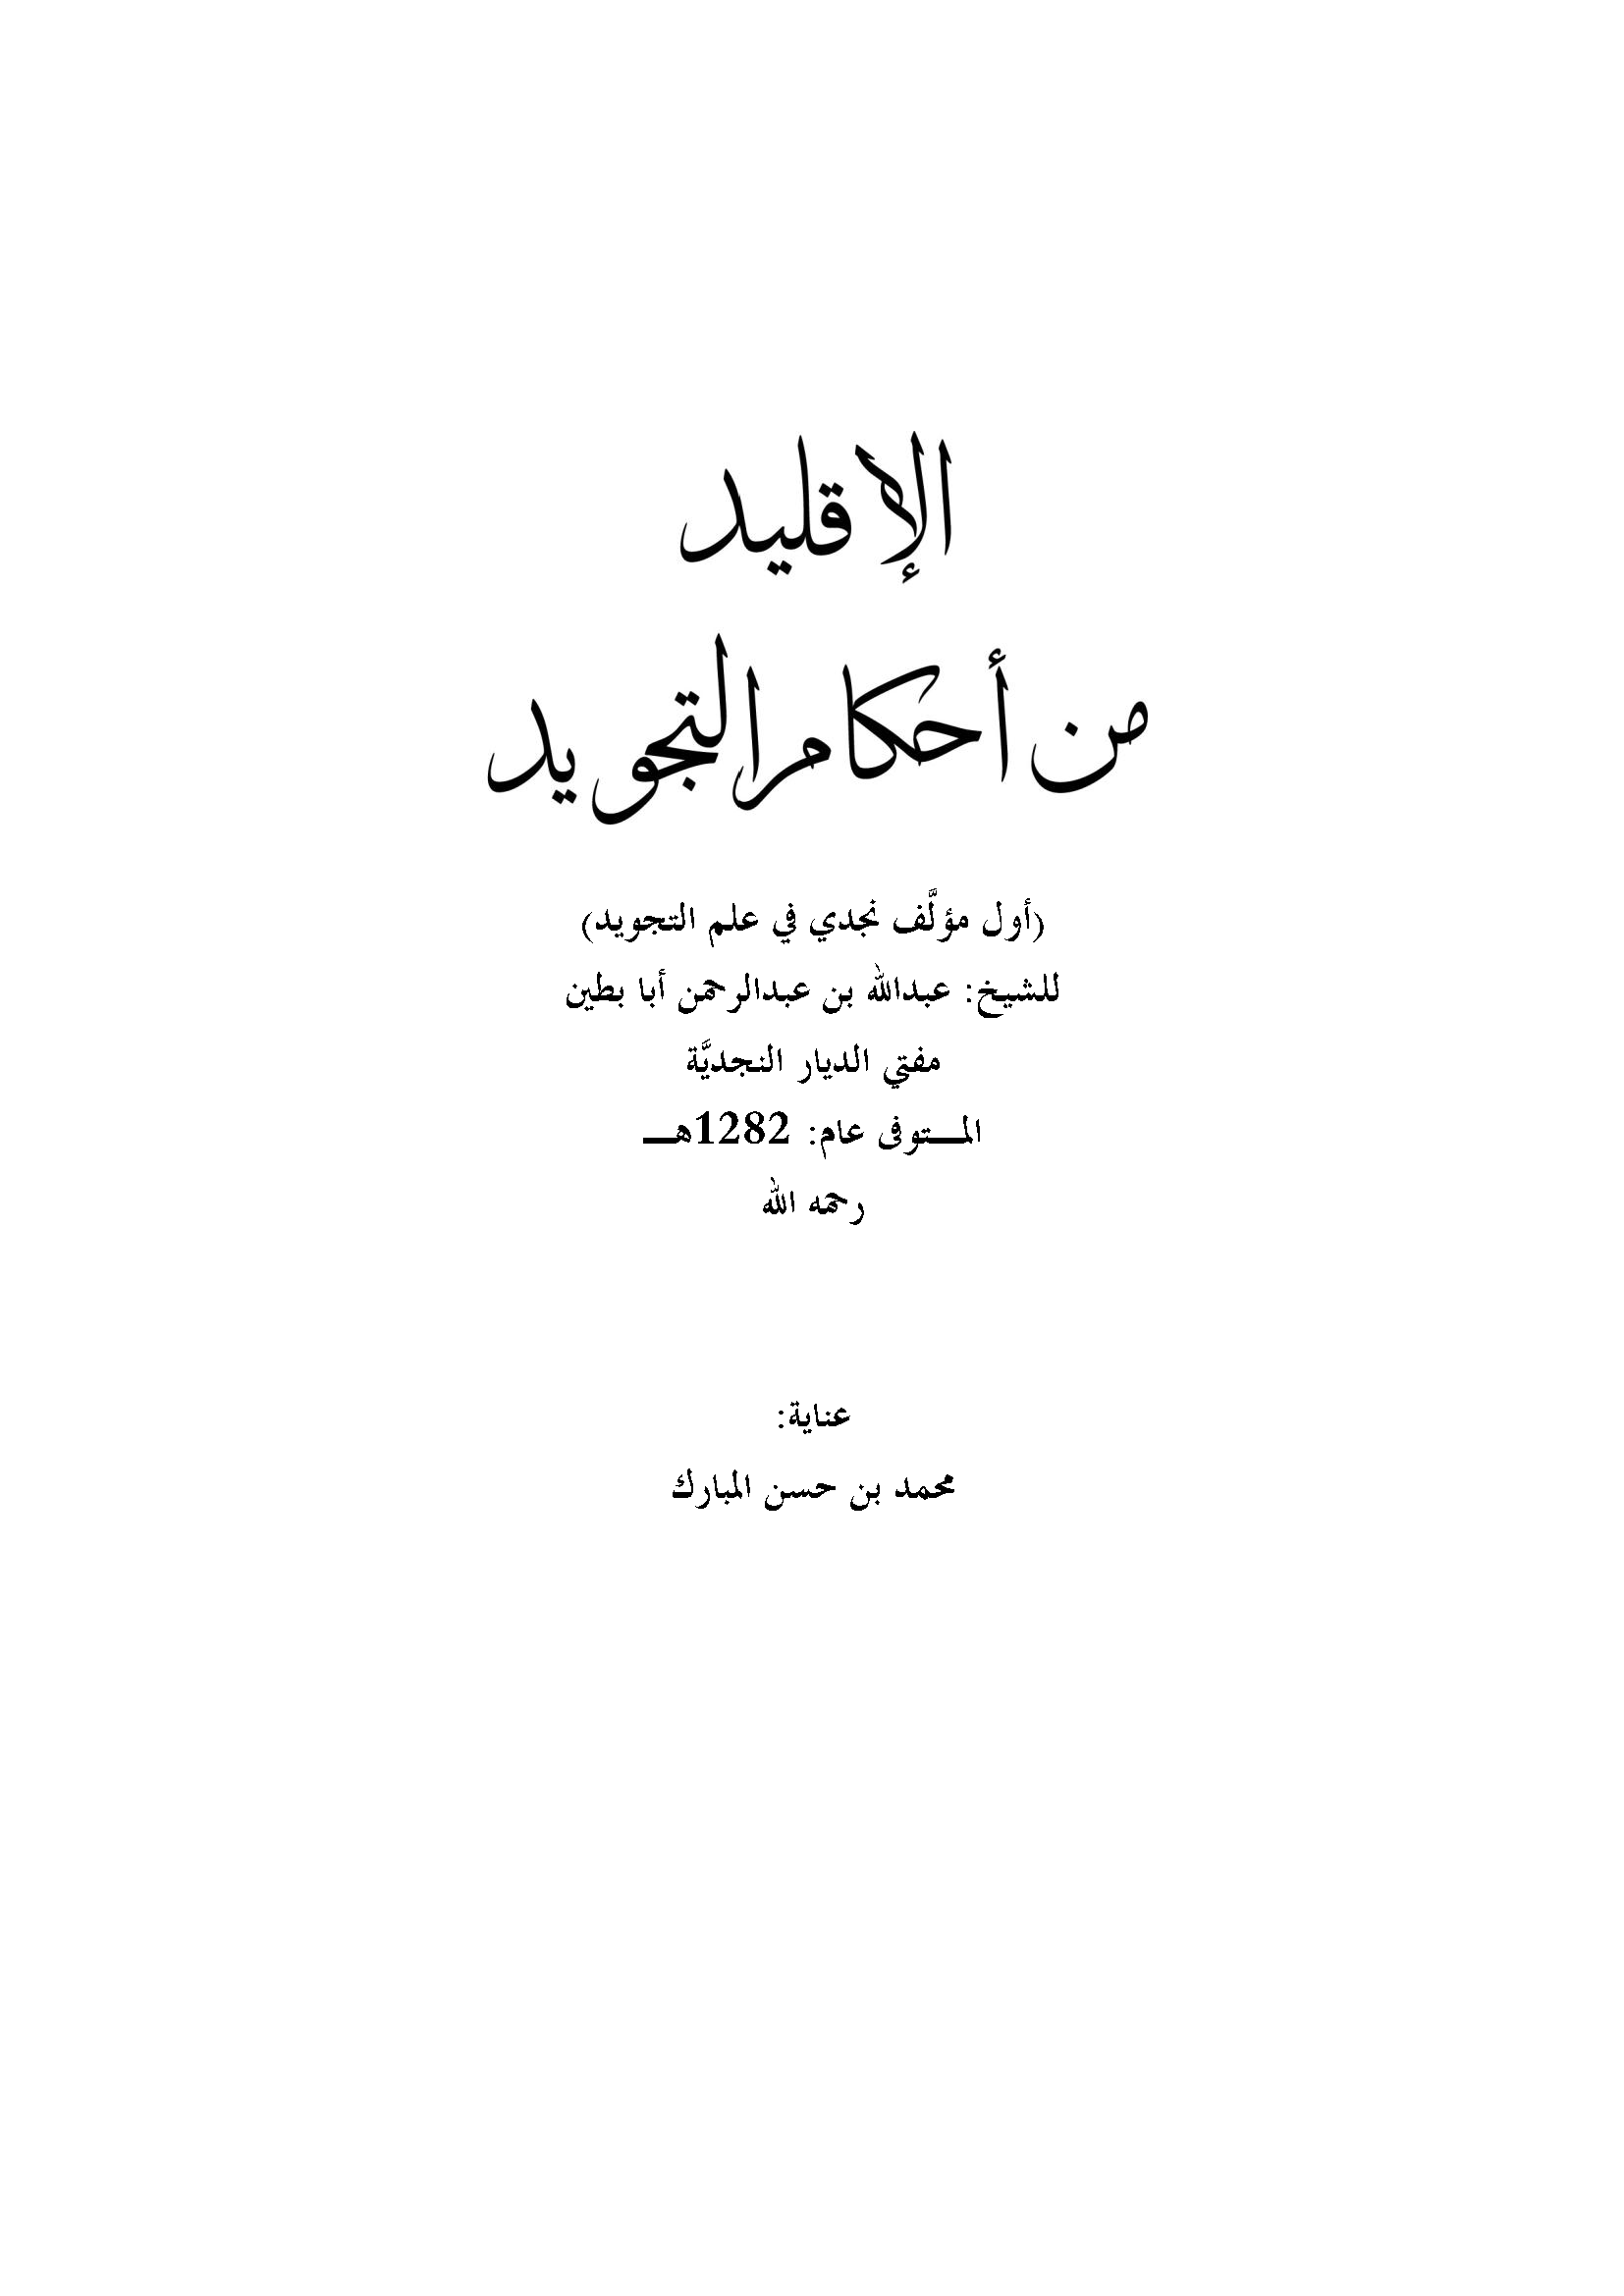 تحميل كتاب الإقليد من أحكام التجويد (أول مؤلف نجدي في علم التجويد) لـِ: الشيخ عبد الله بن عبد الرحمن بن عبد العزيز، الملقب أبا بطين (ت 1282)